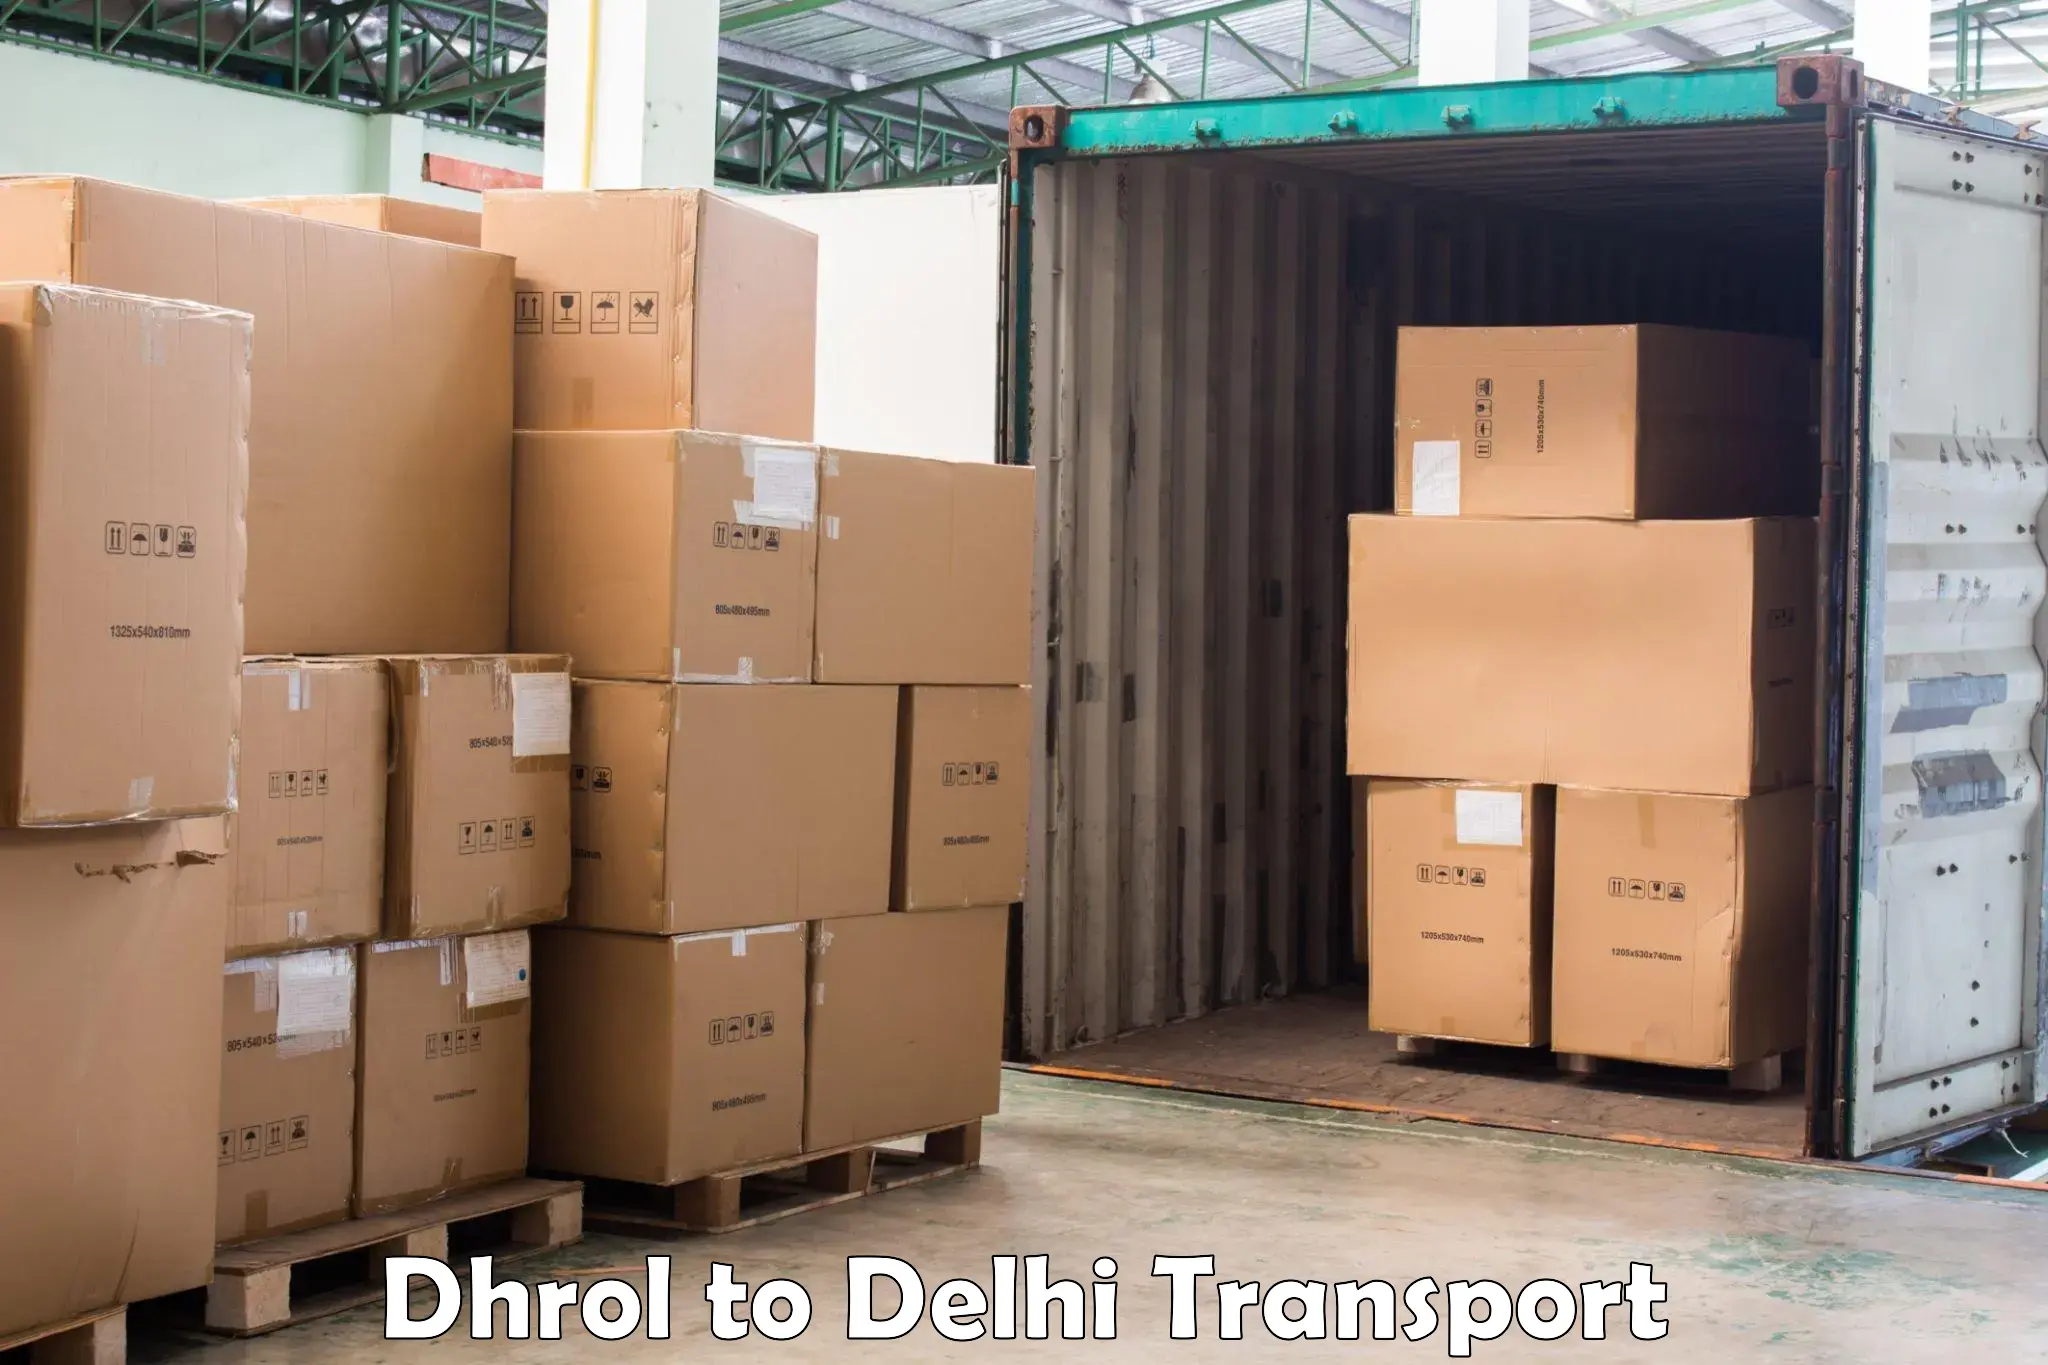 Express transport services Dhrol to Delhi Technological University DTU